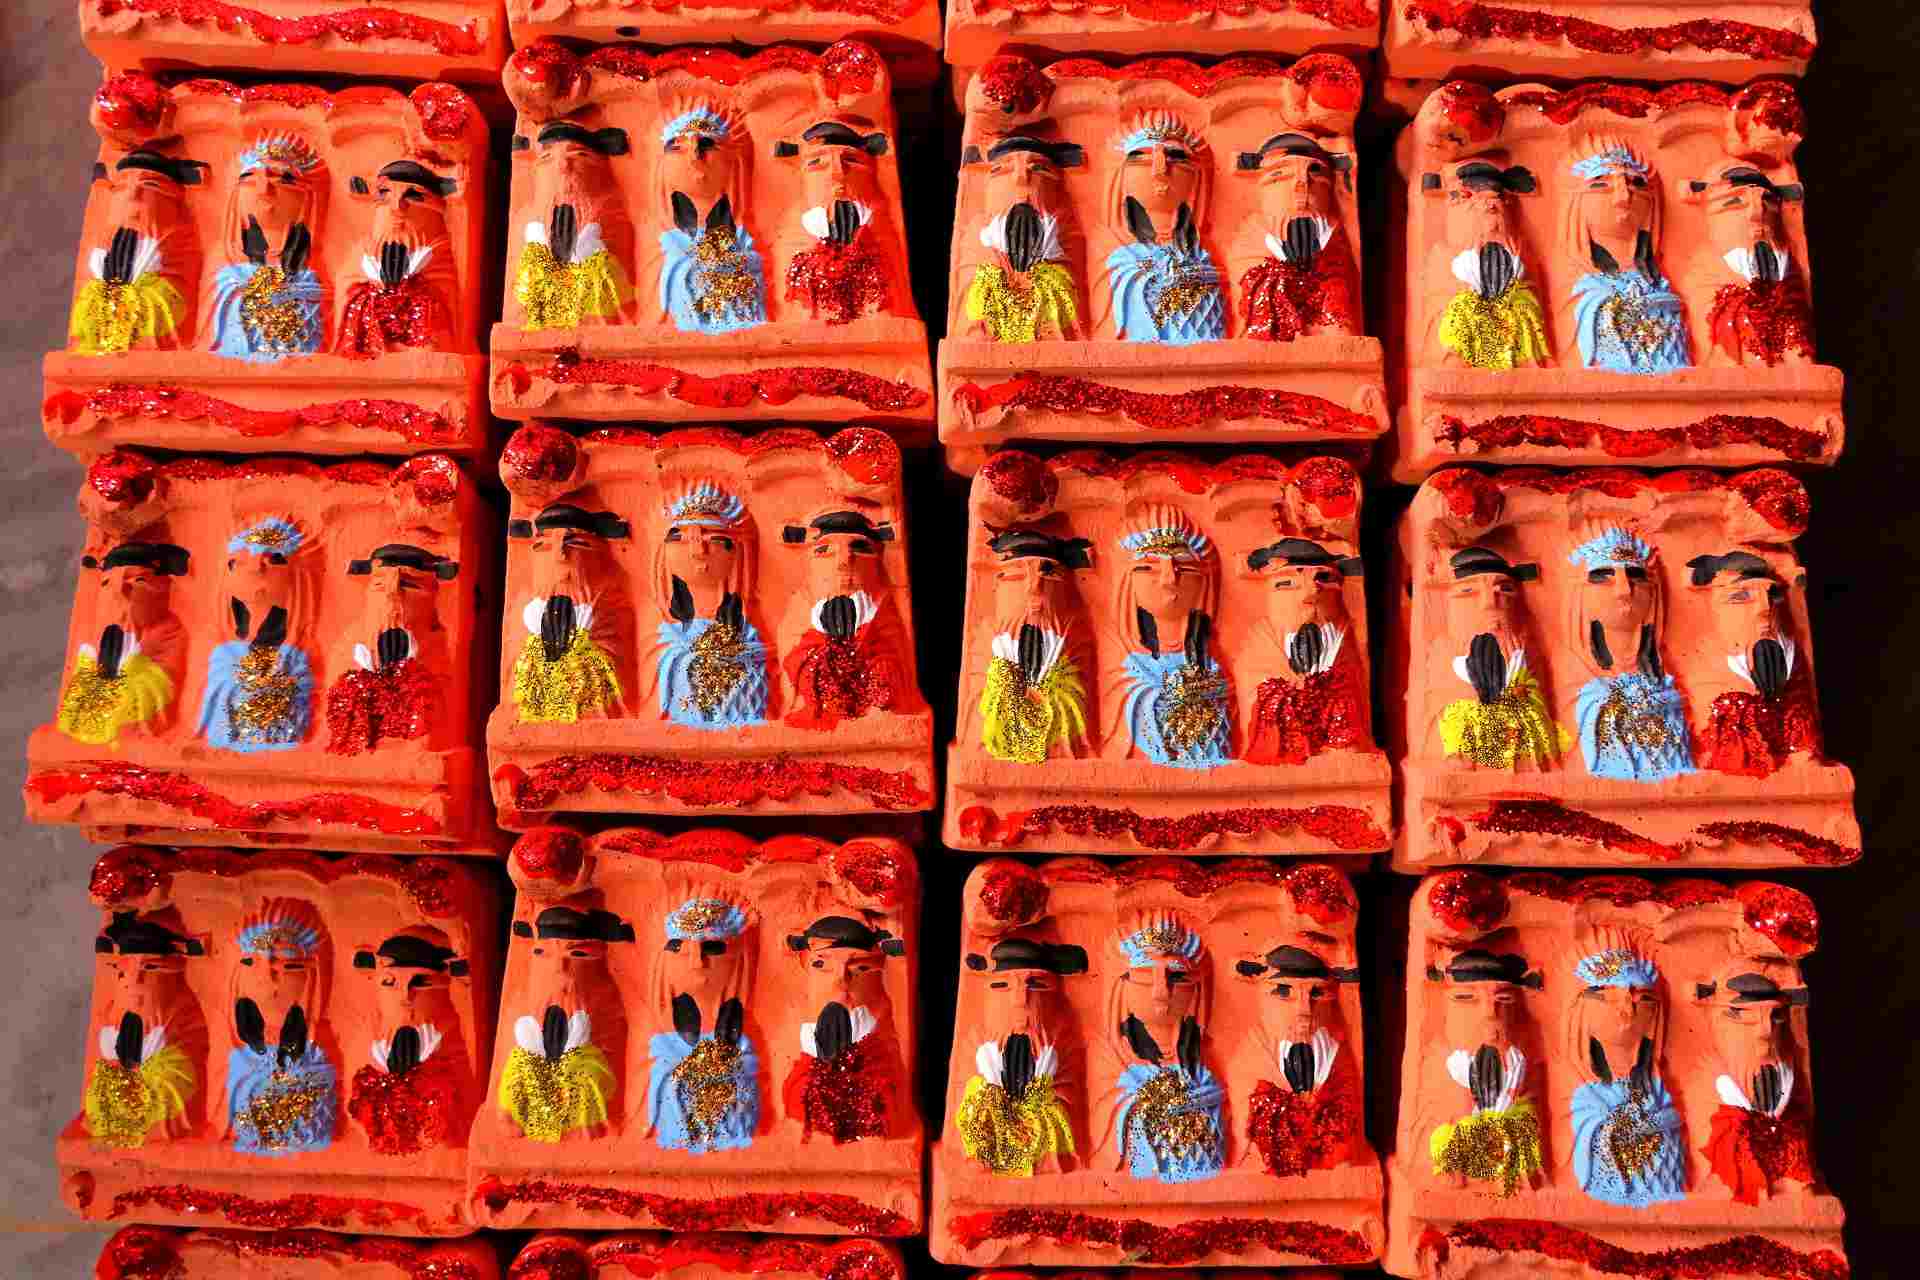 Chị Hằng cho biết, cả năm nay, gia đình cho ra lò khoảng 50.000 tượng ông Táo, xếp thành 500 thùng, mỗi thùng có 100 tượng để xuất bán. 